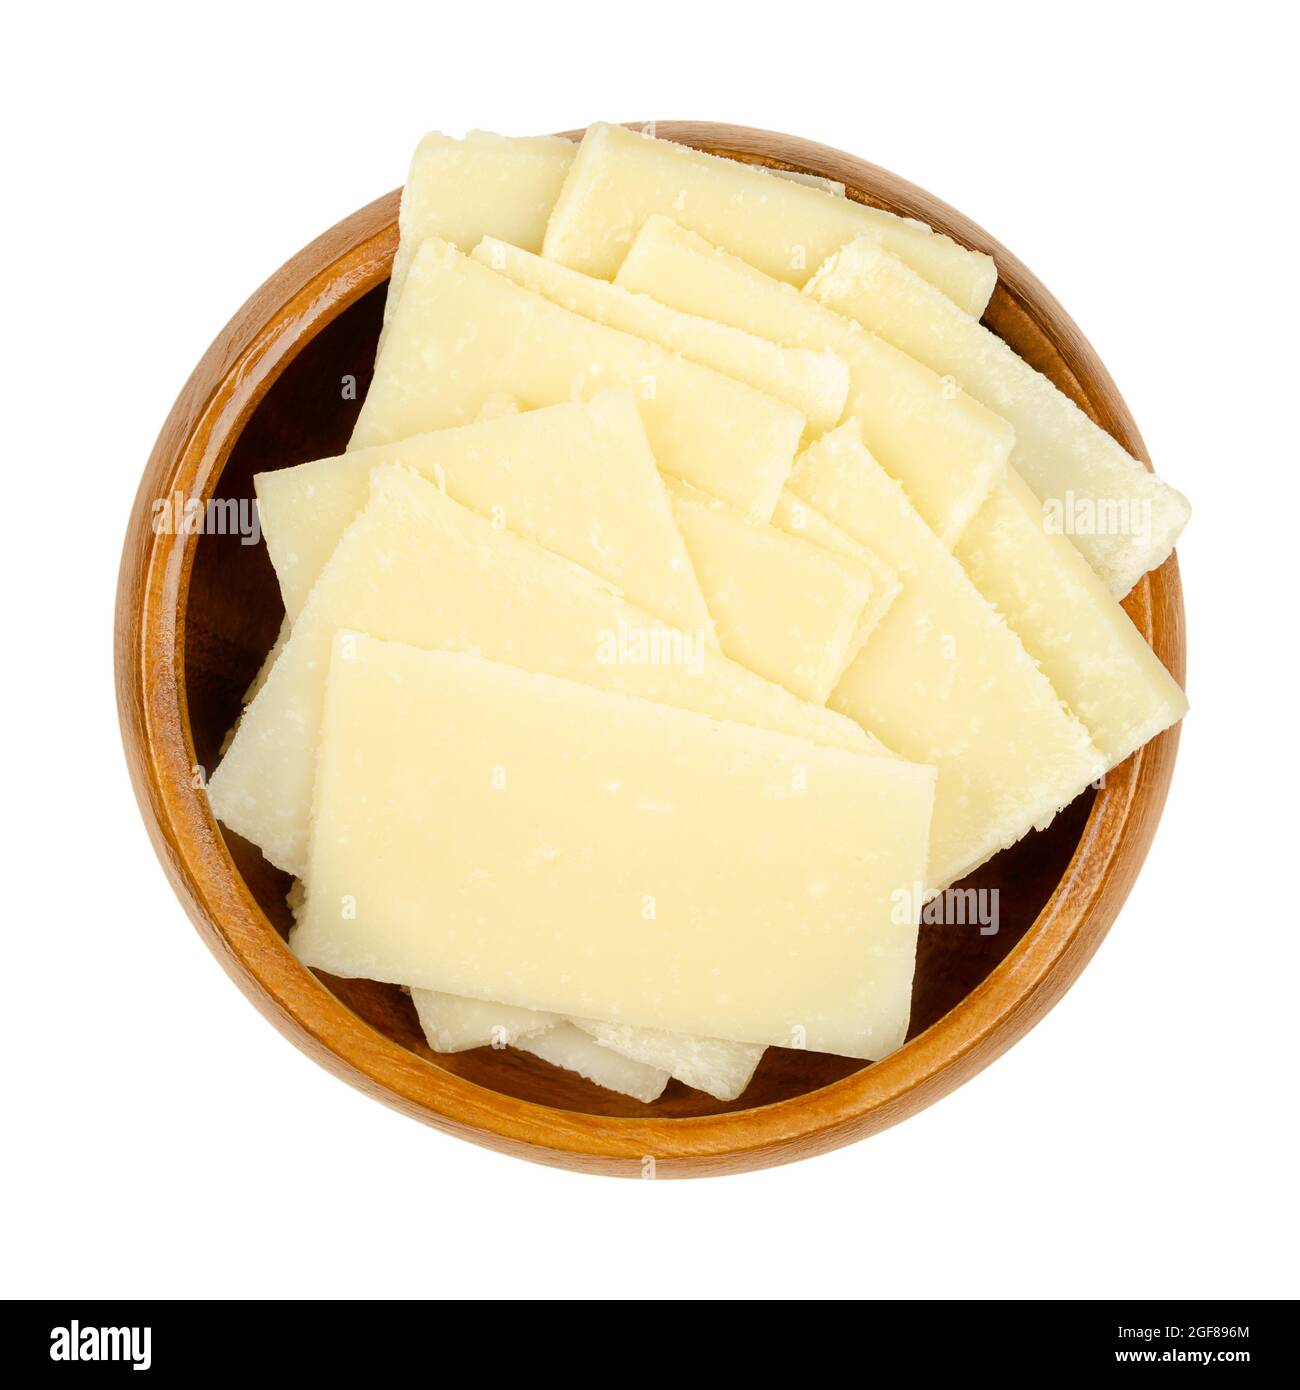 Dünne Grana Padano-Käsescheiben, in einer Holzschüssel. Italienischer Hartkäse, ähnlich wie Parmesan, krümelig strukturiert, mit kräftigem herzhaften Geschmack. Stockfoto